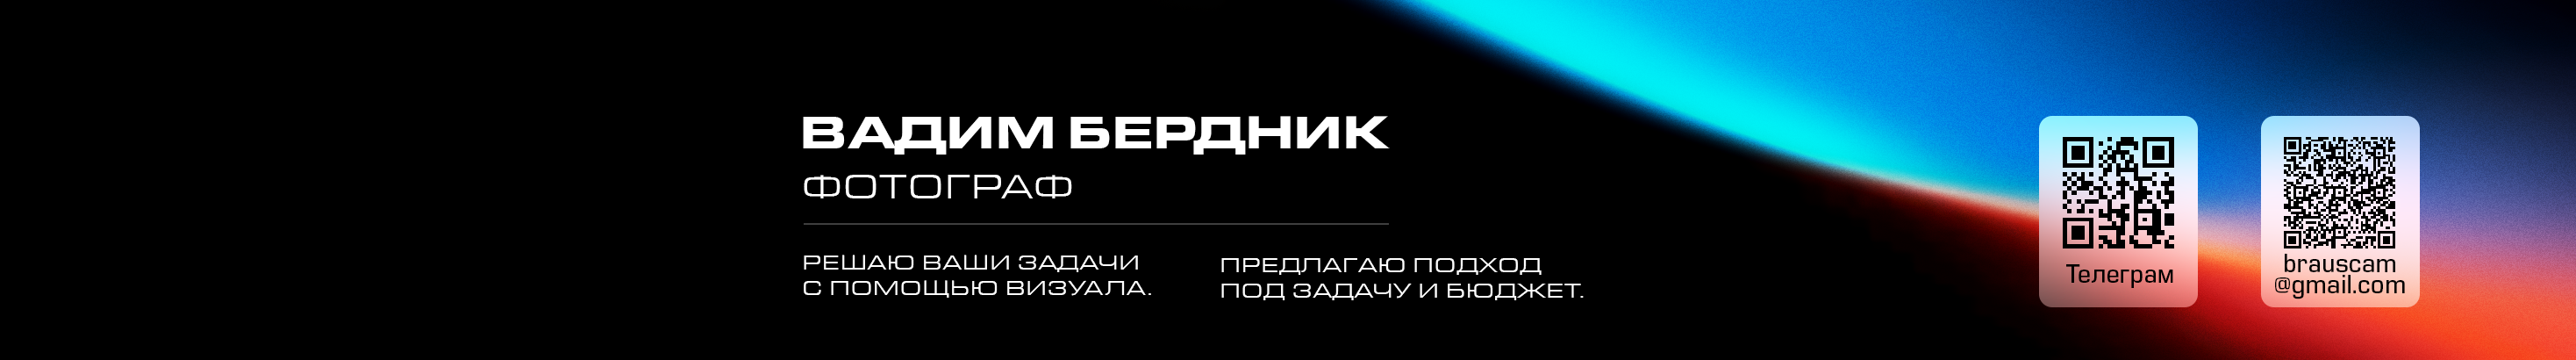 Вадим Бердник's profile banner